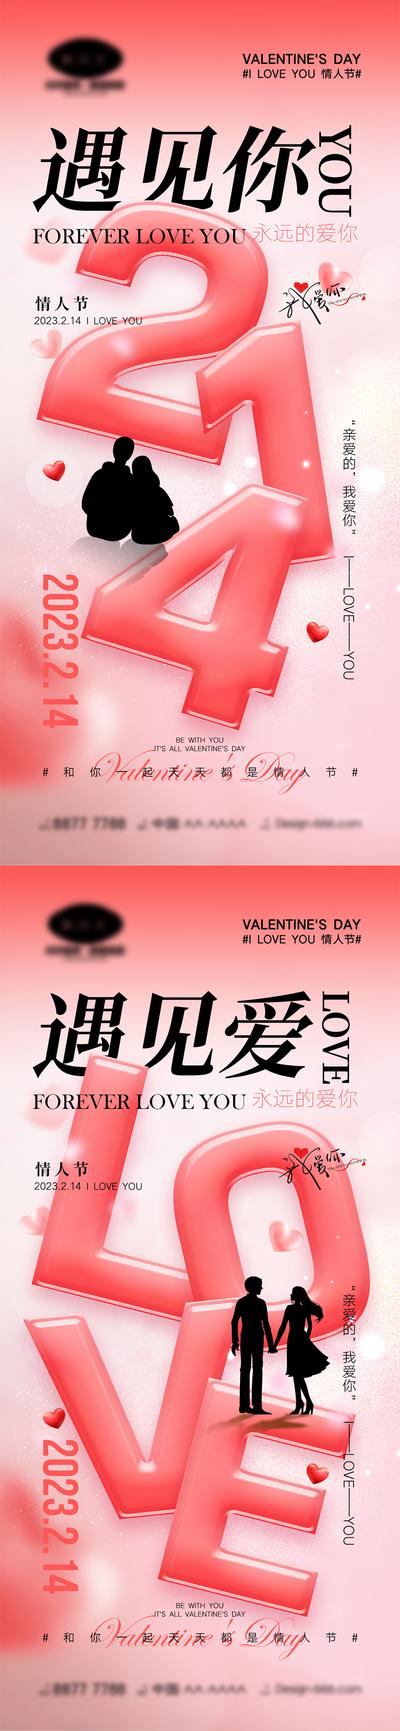 【南门网】海报 活动 520 情人节 告白日 love 爱情 喜鹊 牛郎织女 七夕 爱心 气球